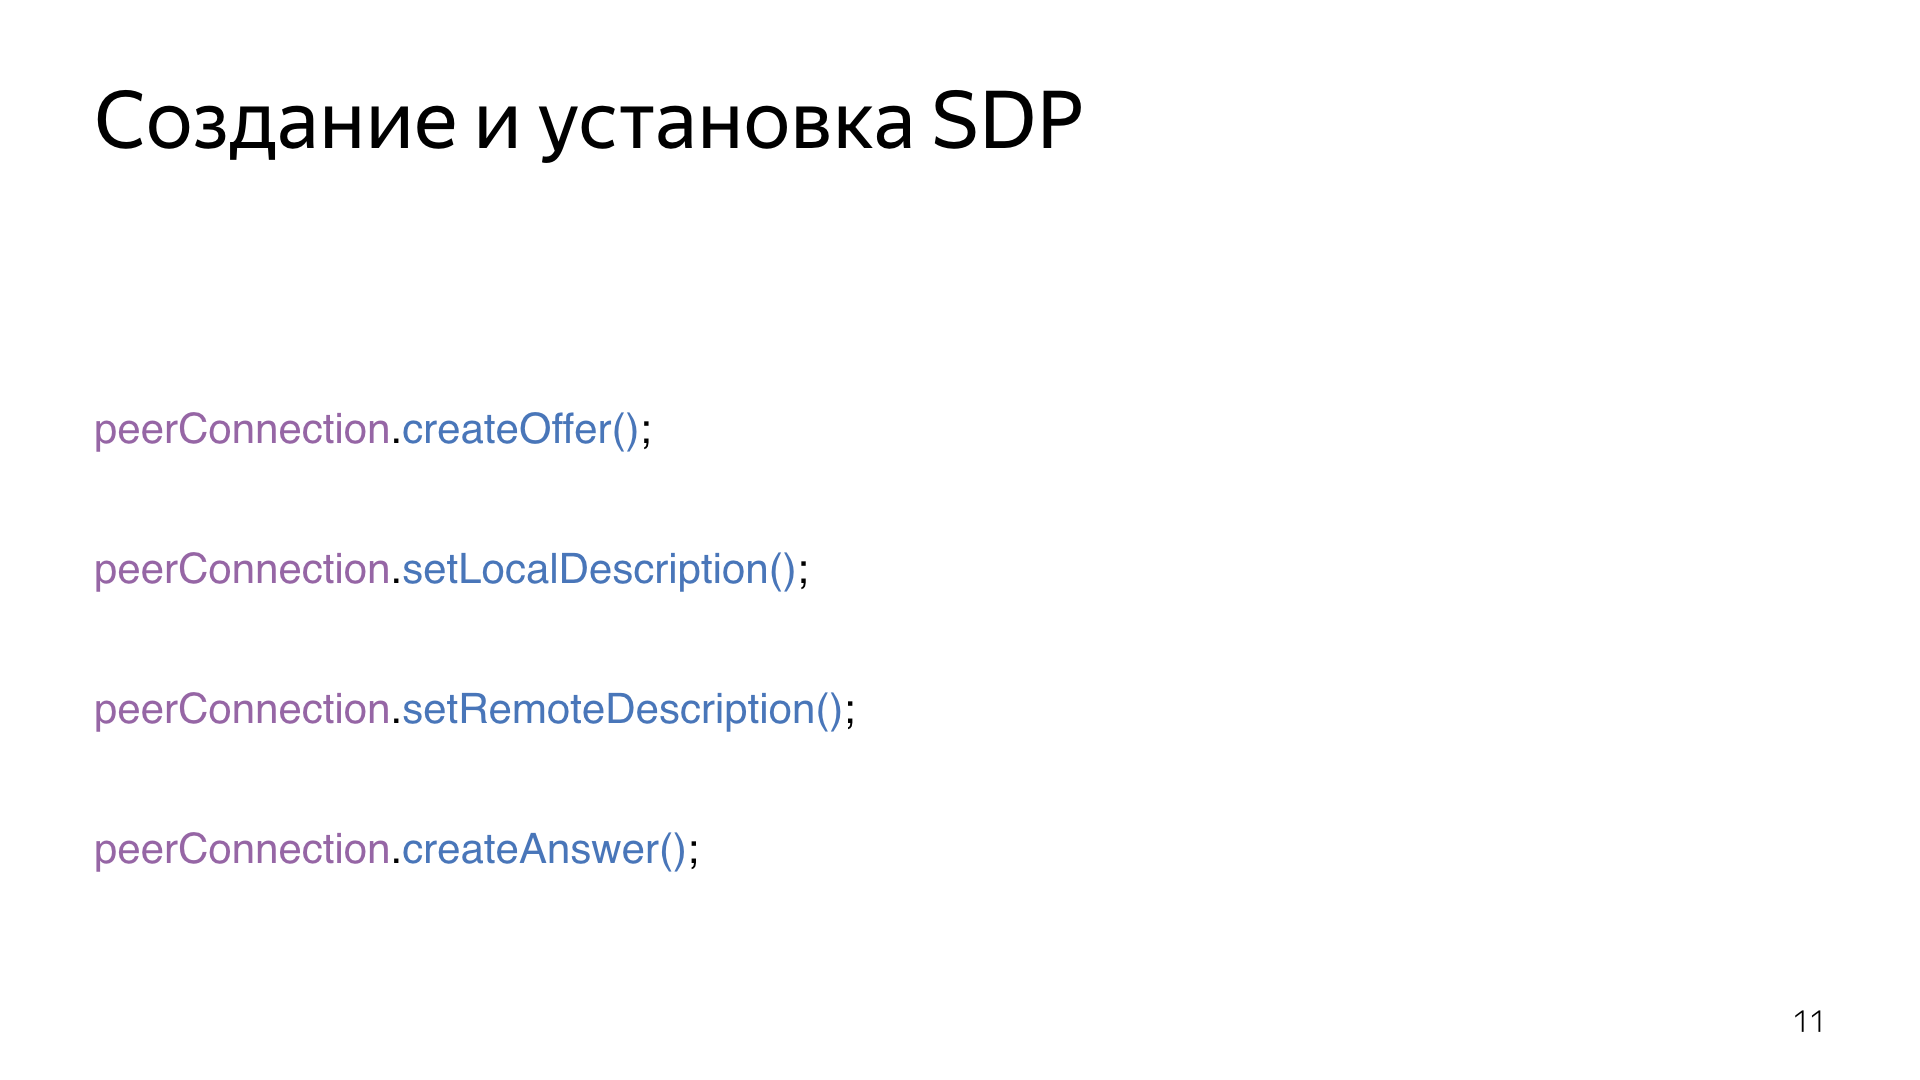 Опыт использования WebRTC. Лекция Яндекса - 11